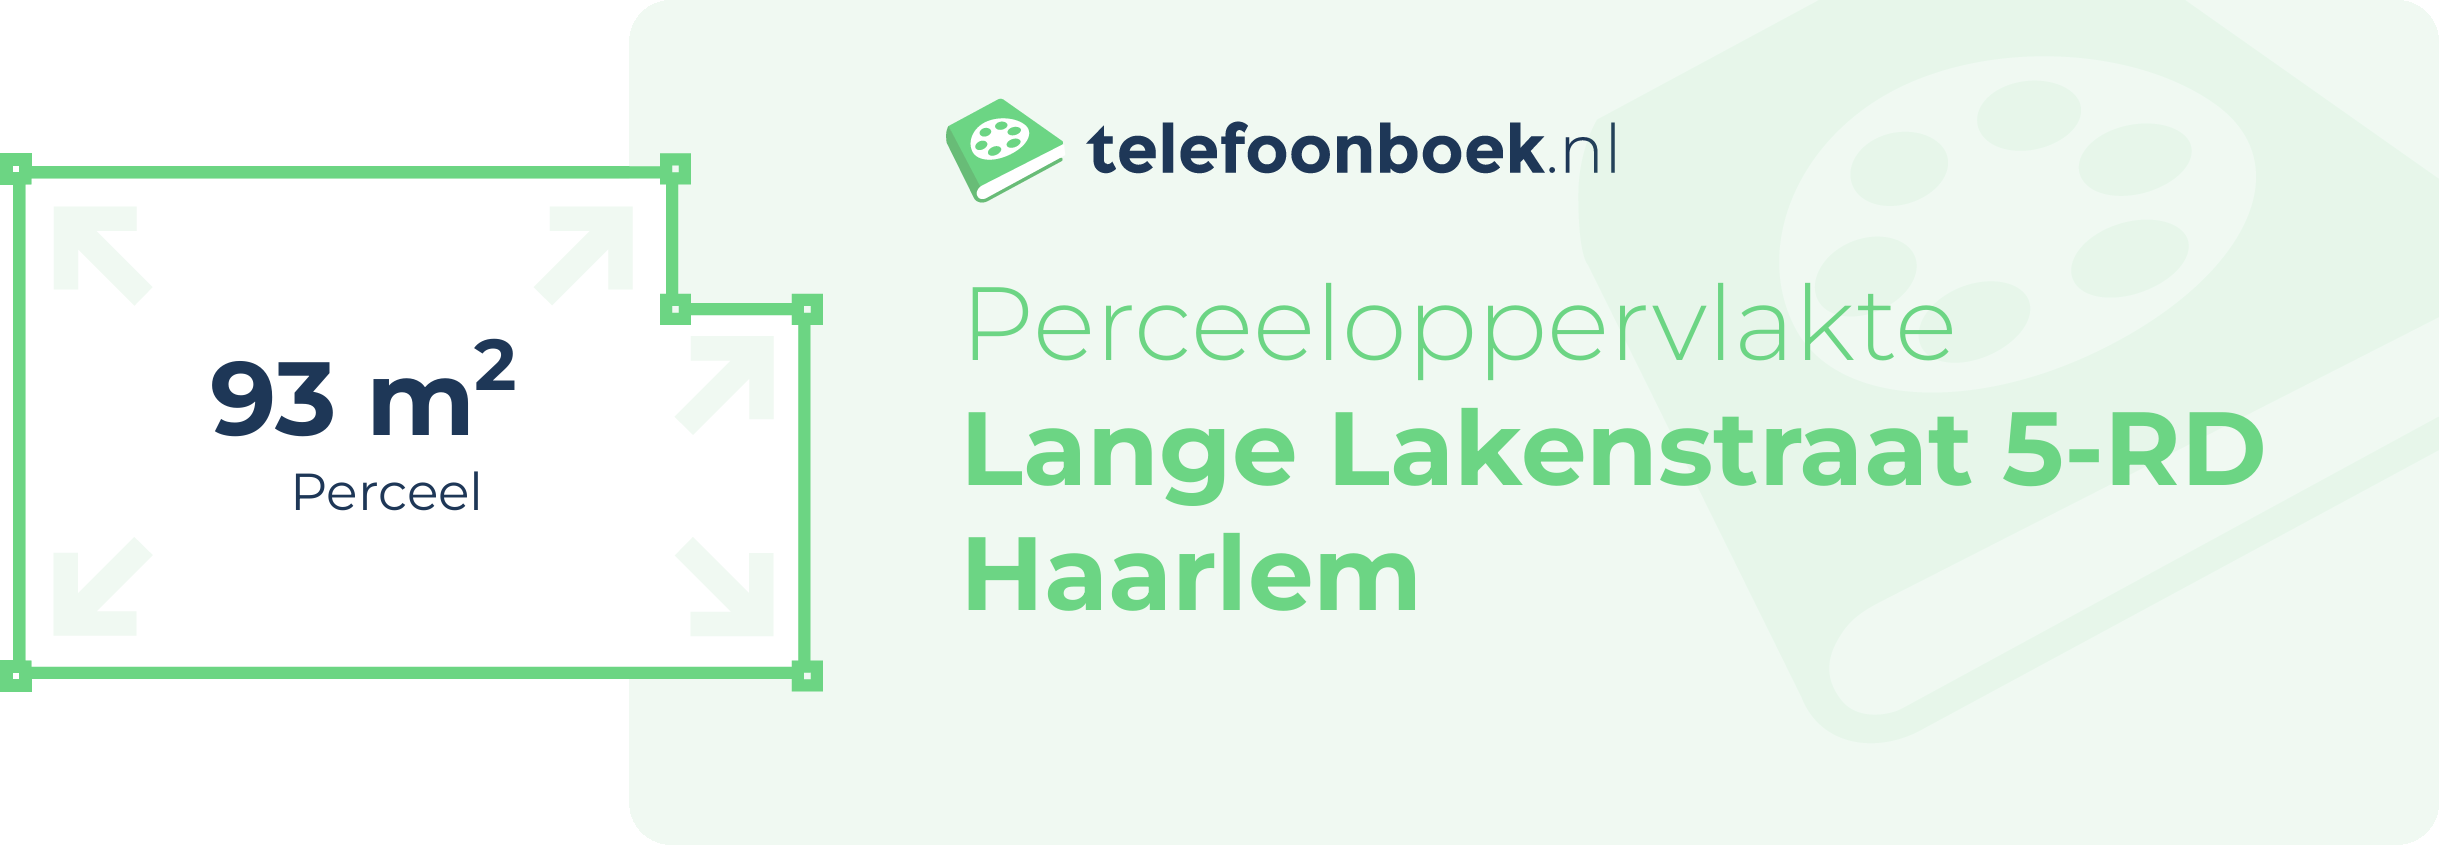 Perceeloppervlakte Lange Lakenstraat 5-RD Haarlem